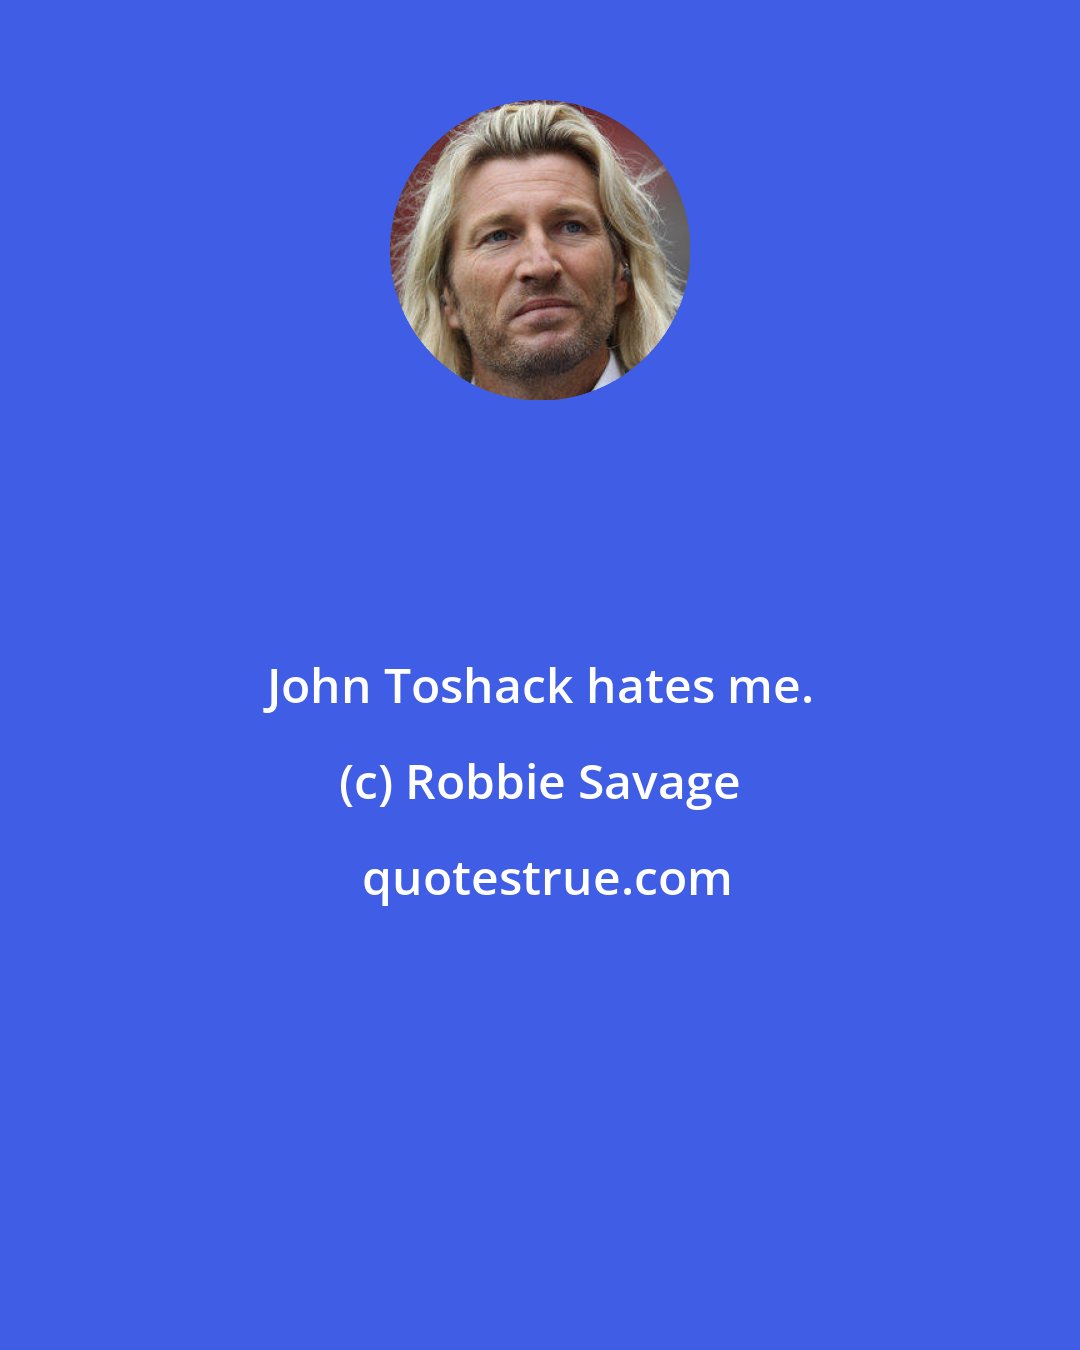 Robbie Savage: John Toshack hates me.